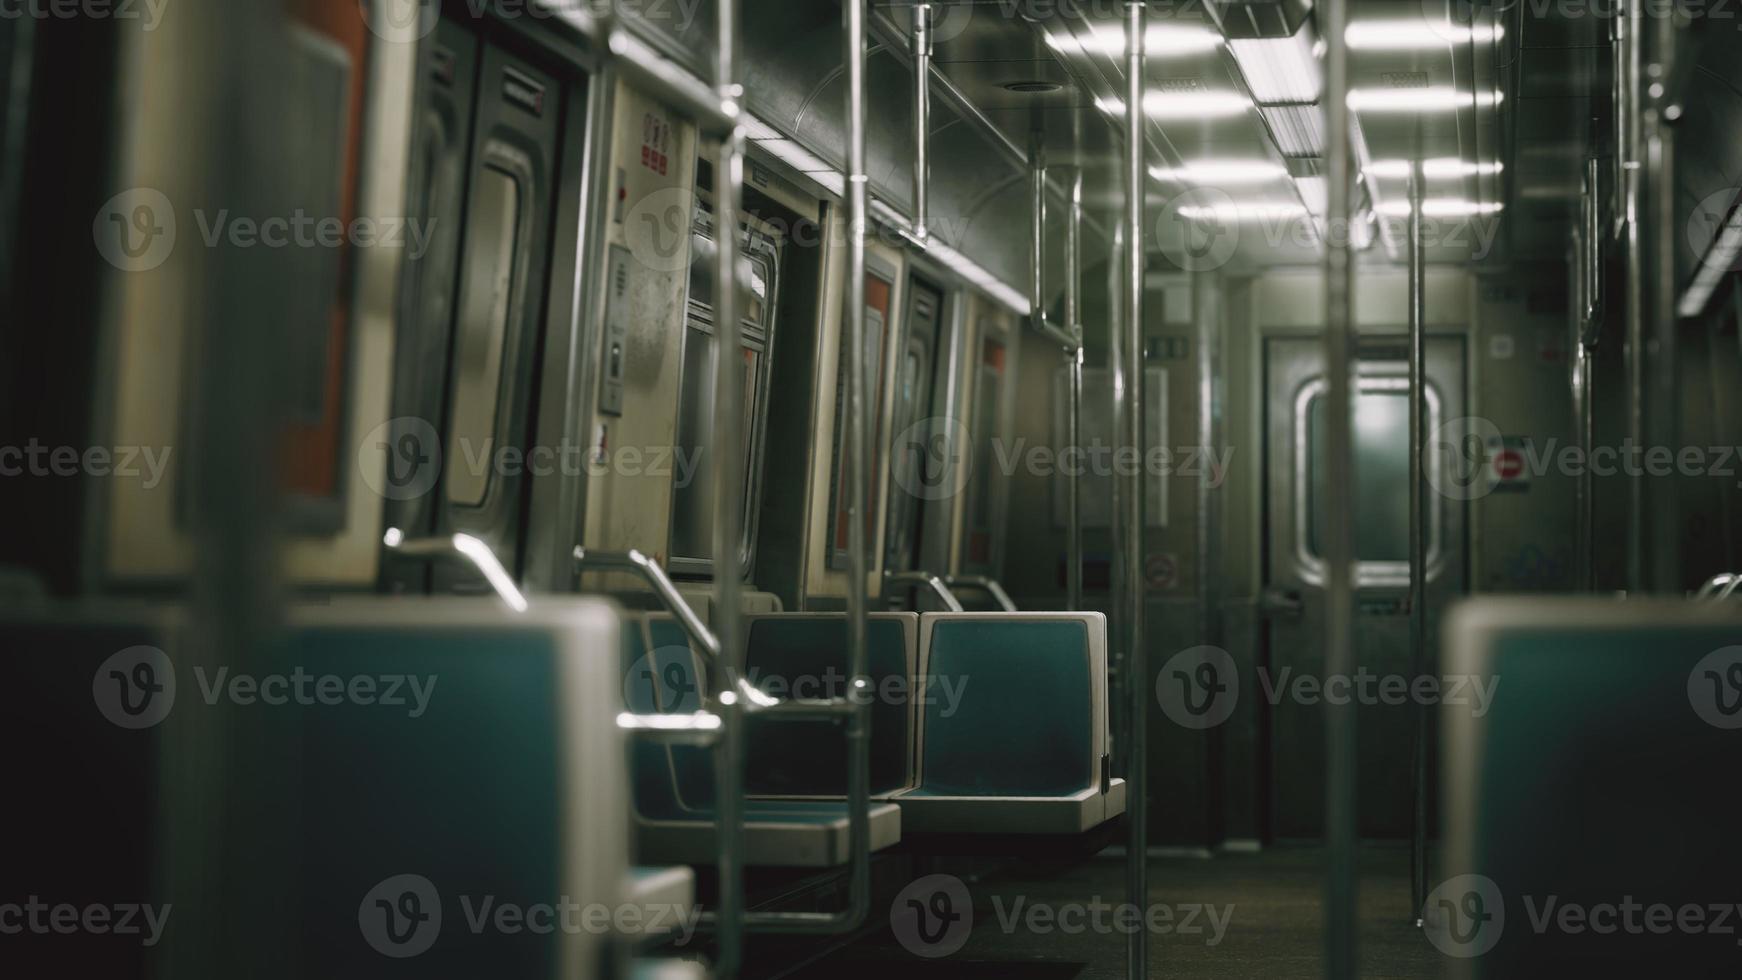 8k à l'intérieur de l'ancienne voiture de métro non modernisée aux états-unis photo